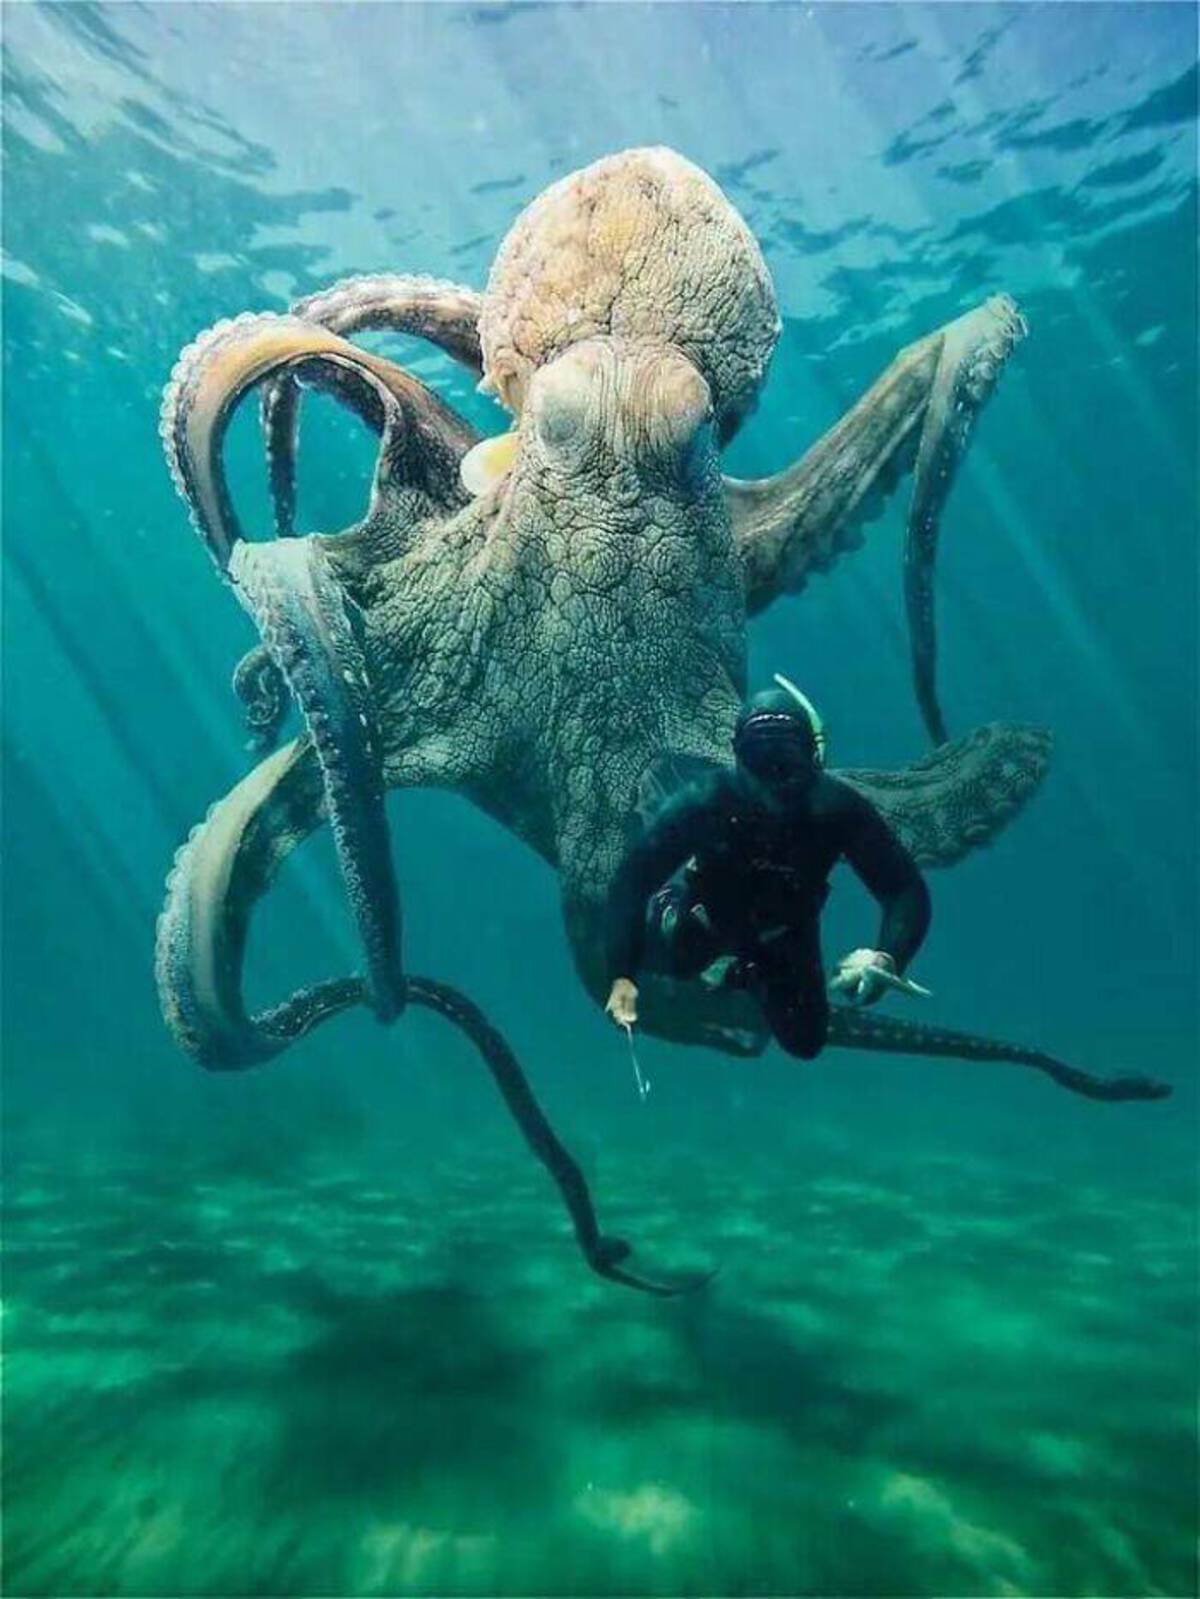 30 foot octopus